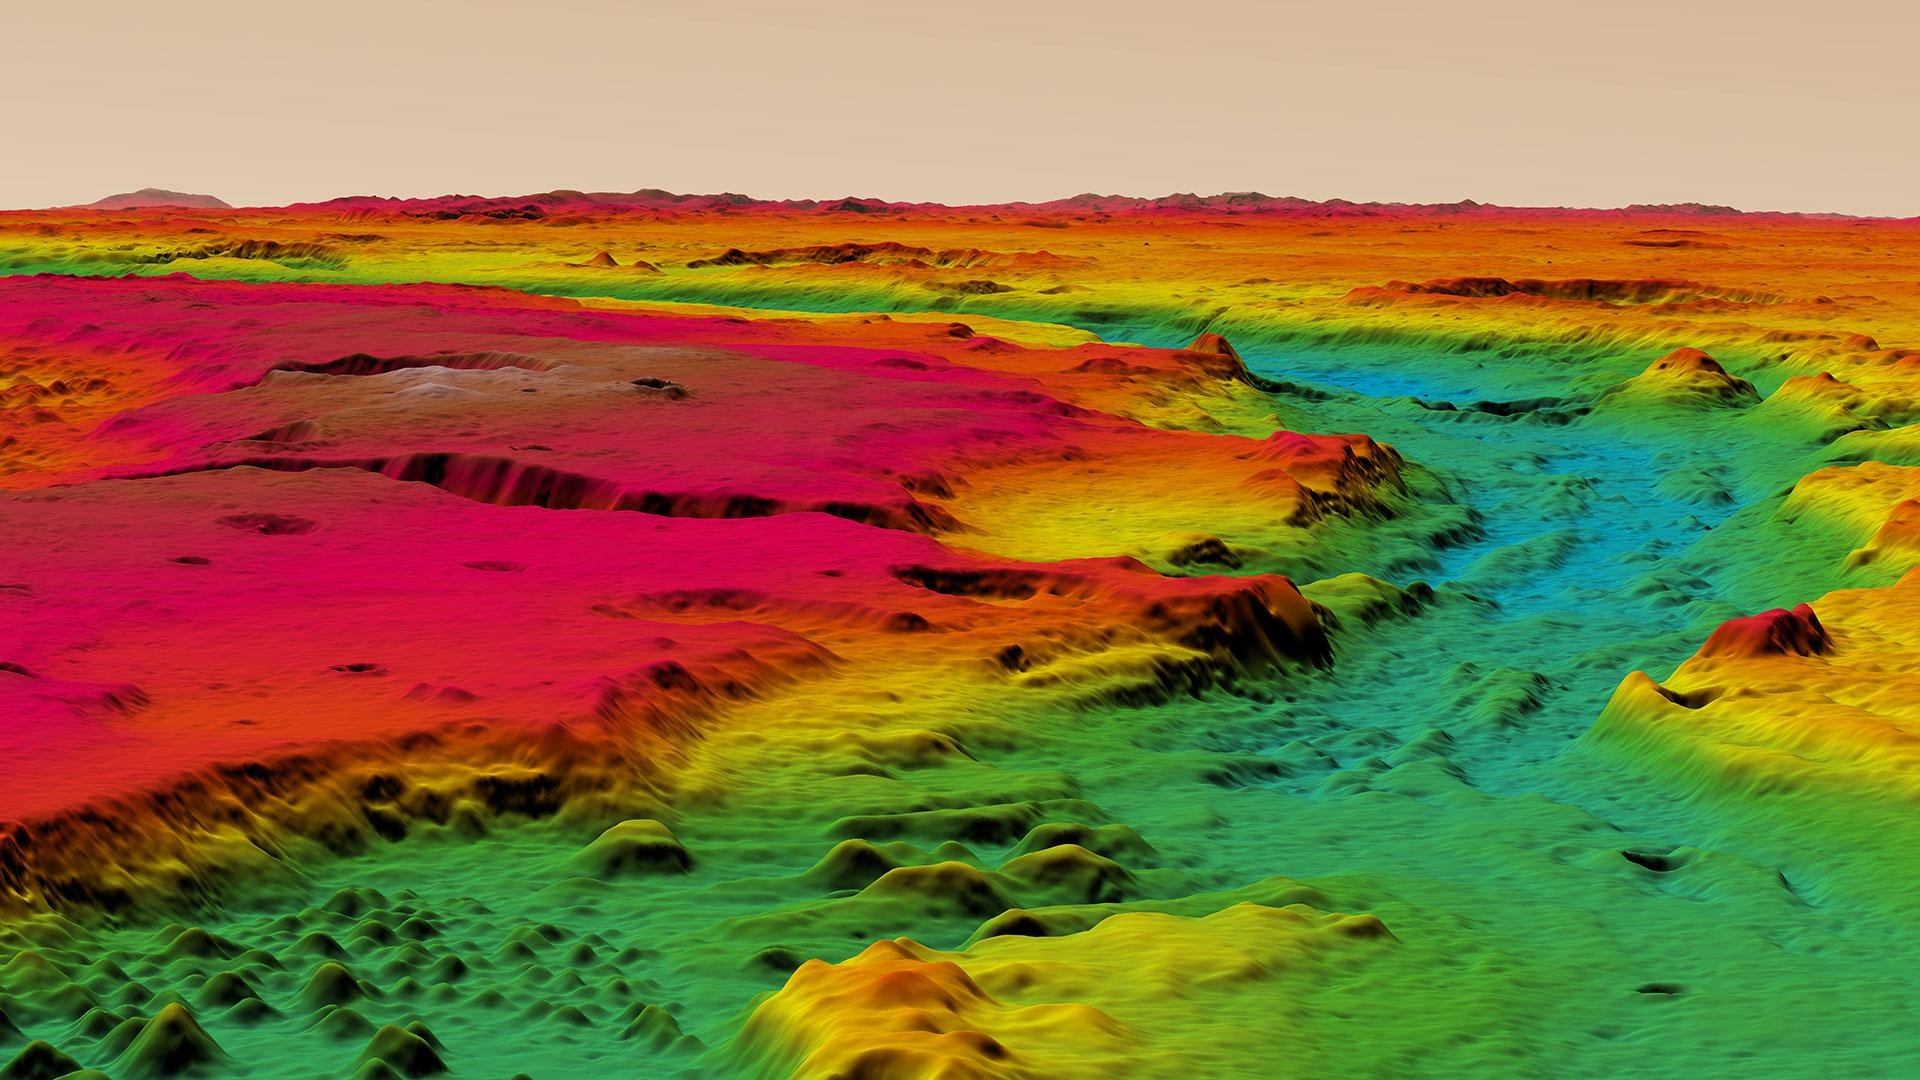 Farbkodierte perspektivische Ansicht der Topographie des Ares Vallis-Oberlaufs